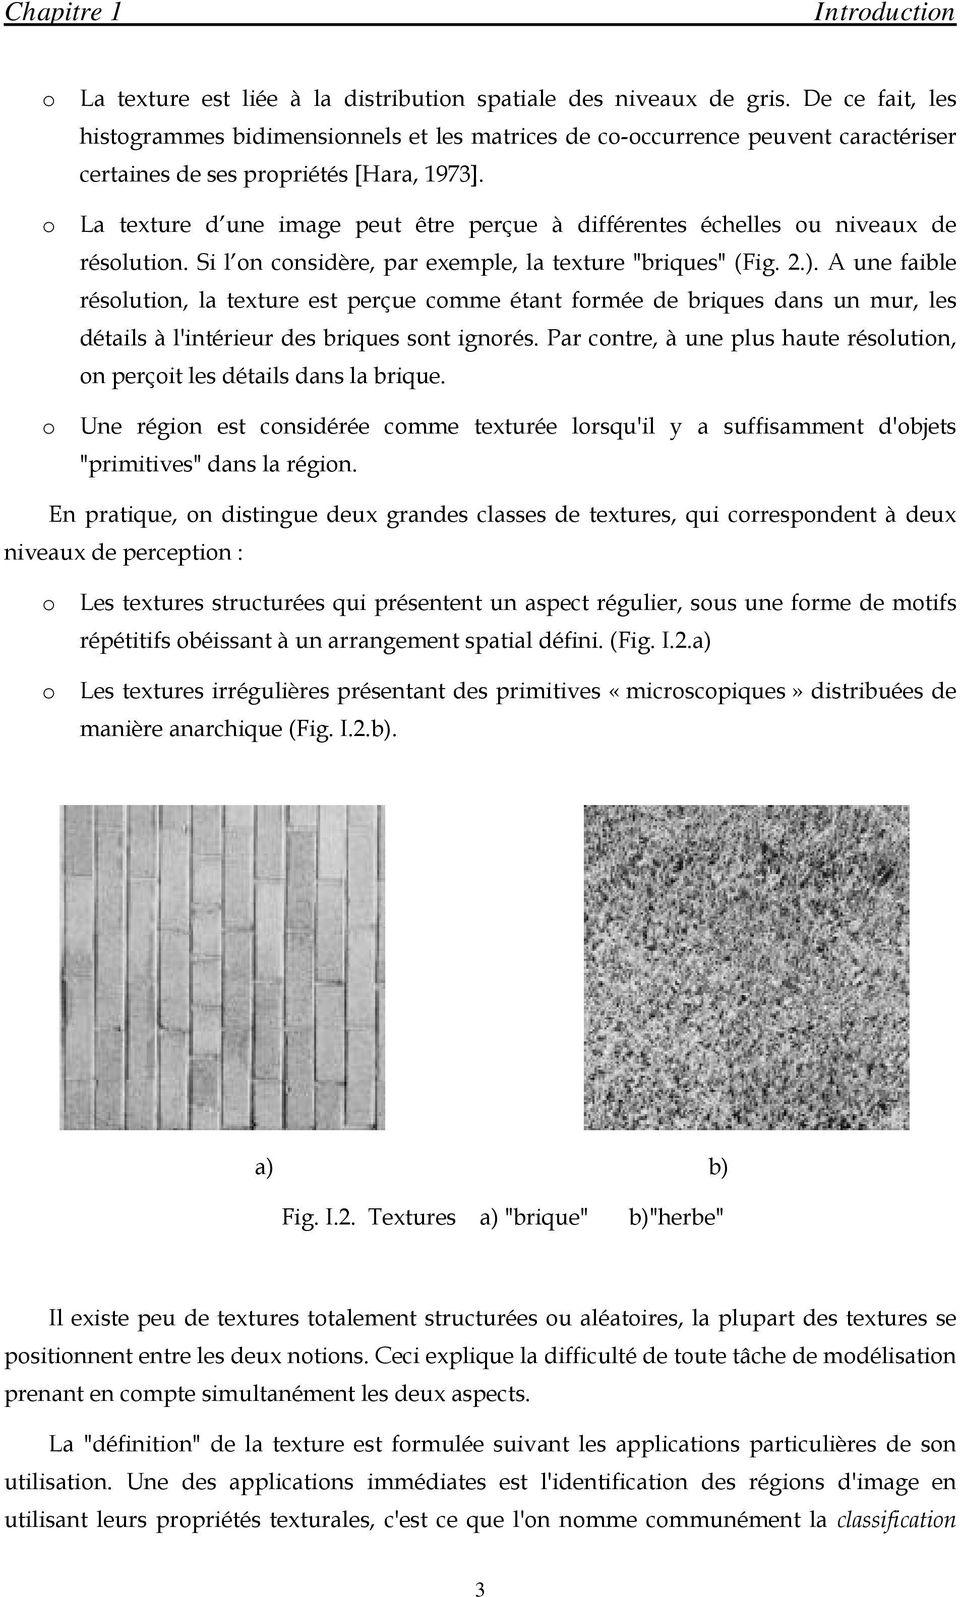 La texture d une image peut être perçue à différente échelle ou niveaux de réolution. Si l on conidère, par exemple, la texture "brique" (Fig. 2.).